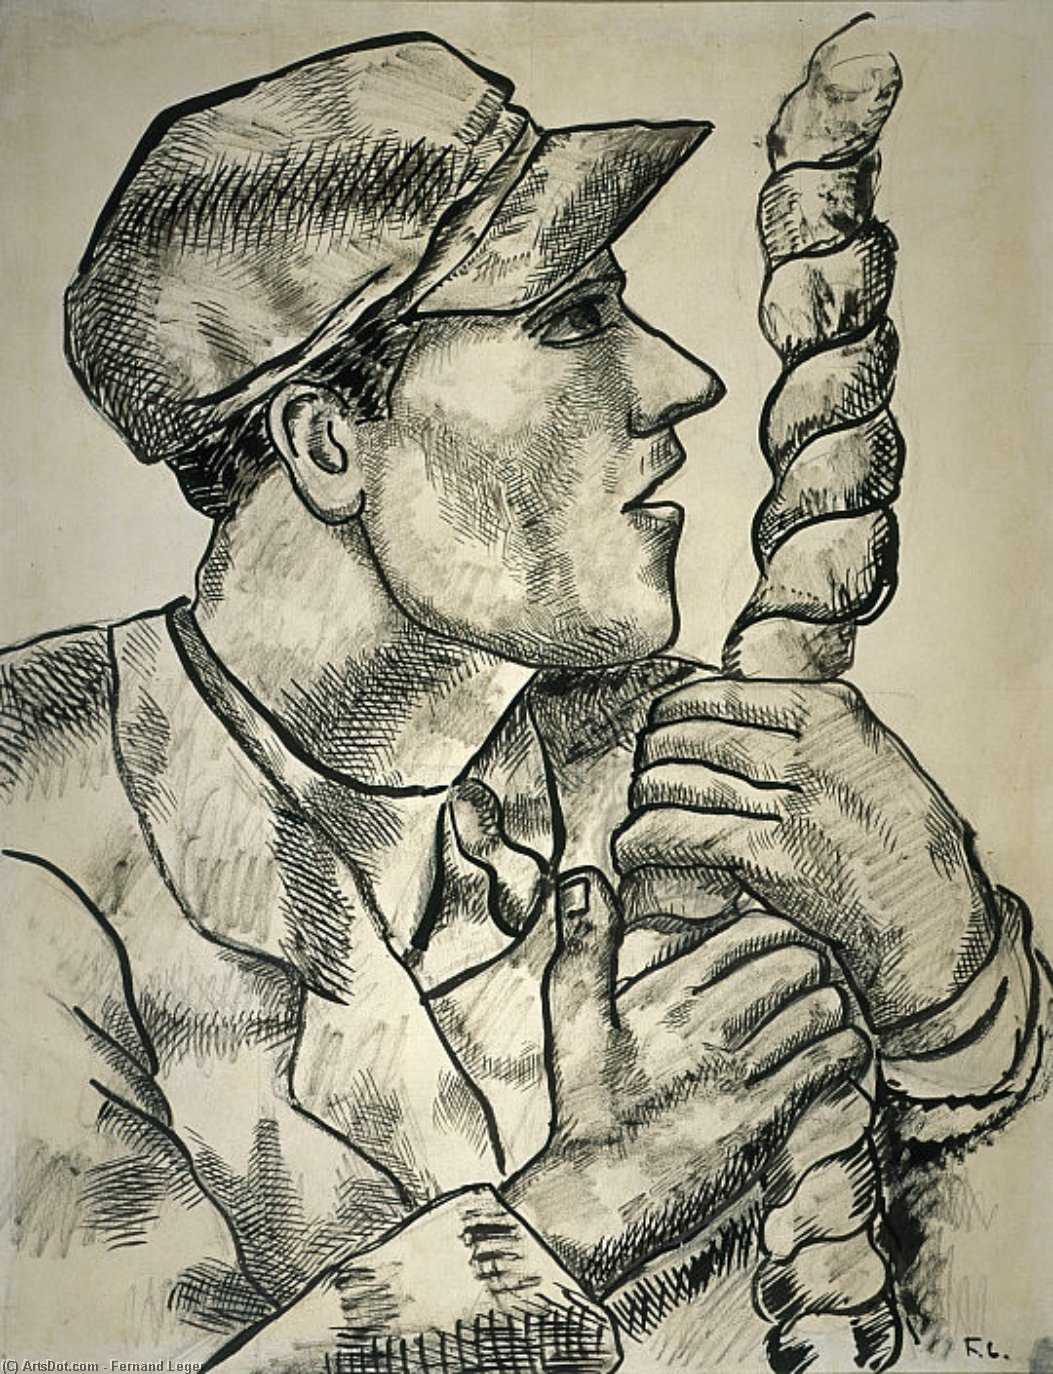 WikiOO.org - Енциклопедия за изящни изкуства - Живопис, Произведения на изкуството Fernand Leger - Man in Profile with Rope, Study for The Constructors